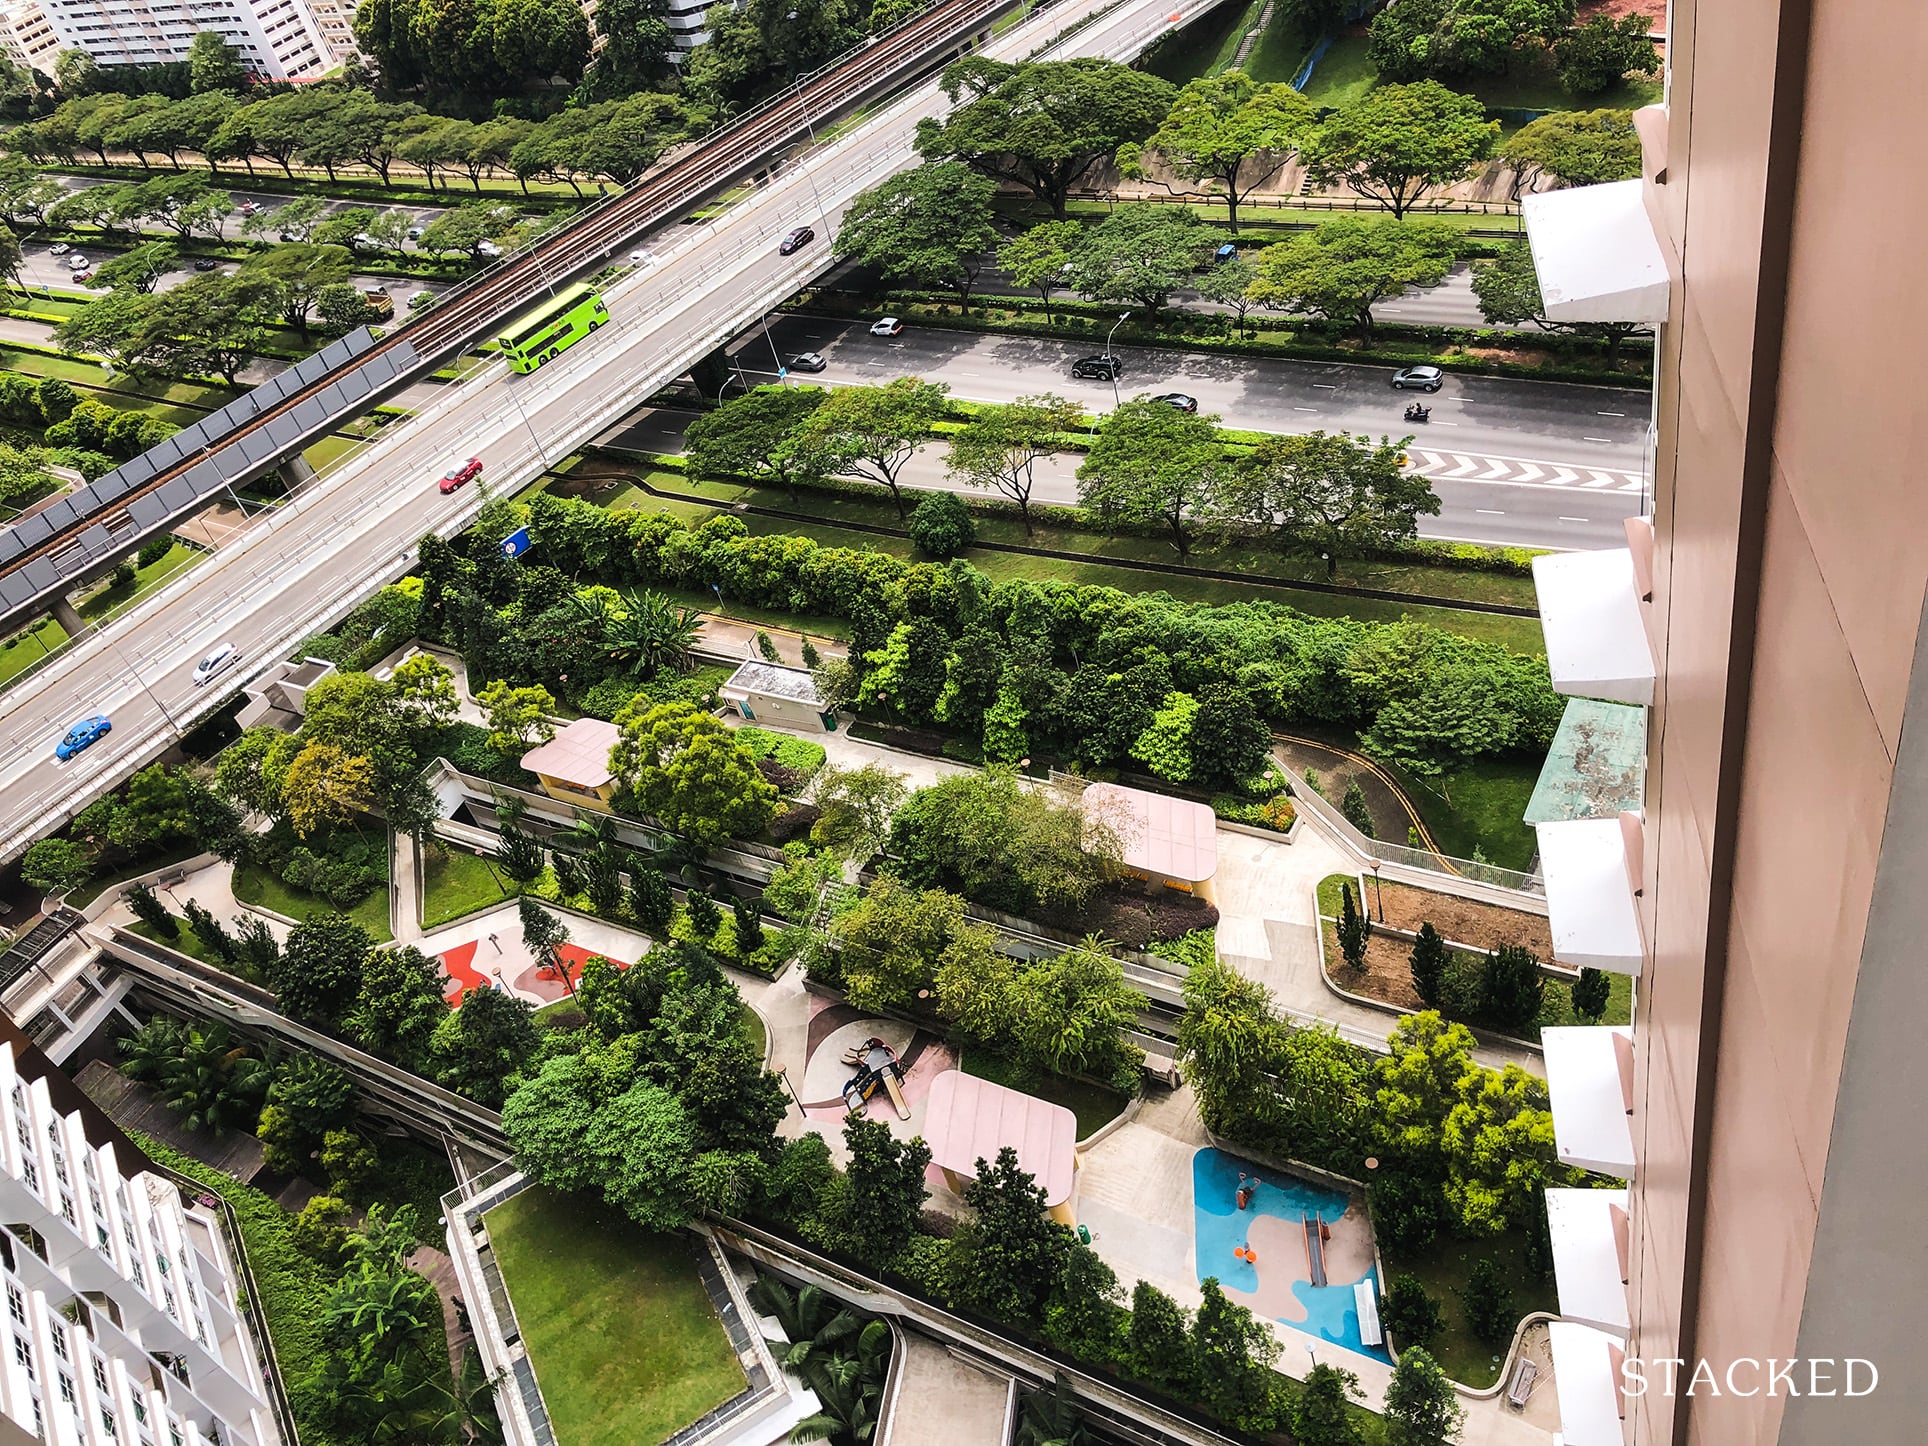 Skyline @ Bukit Batok Rooftop Garden